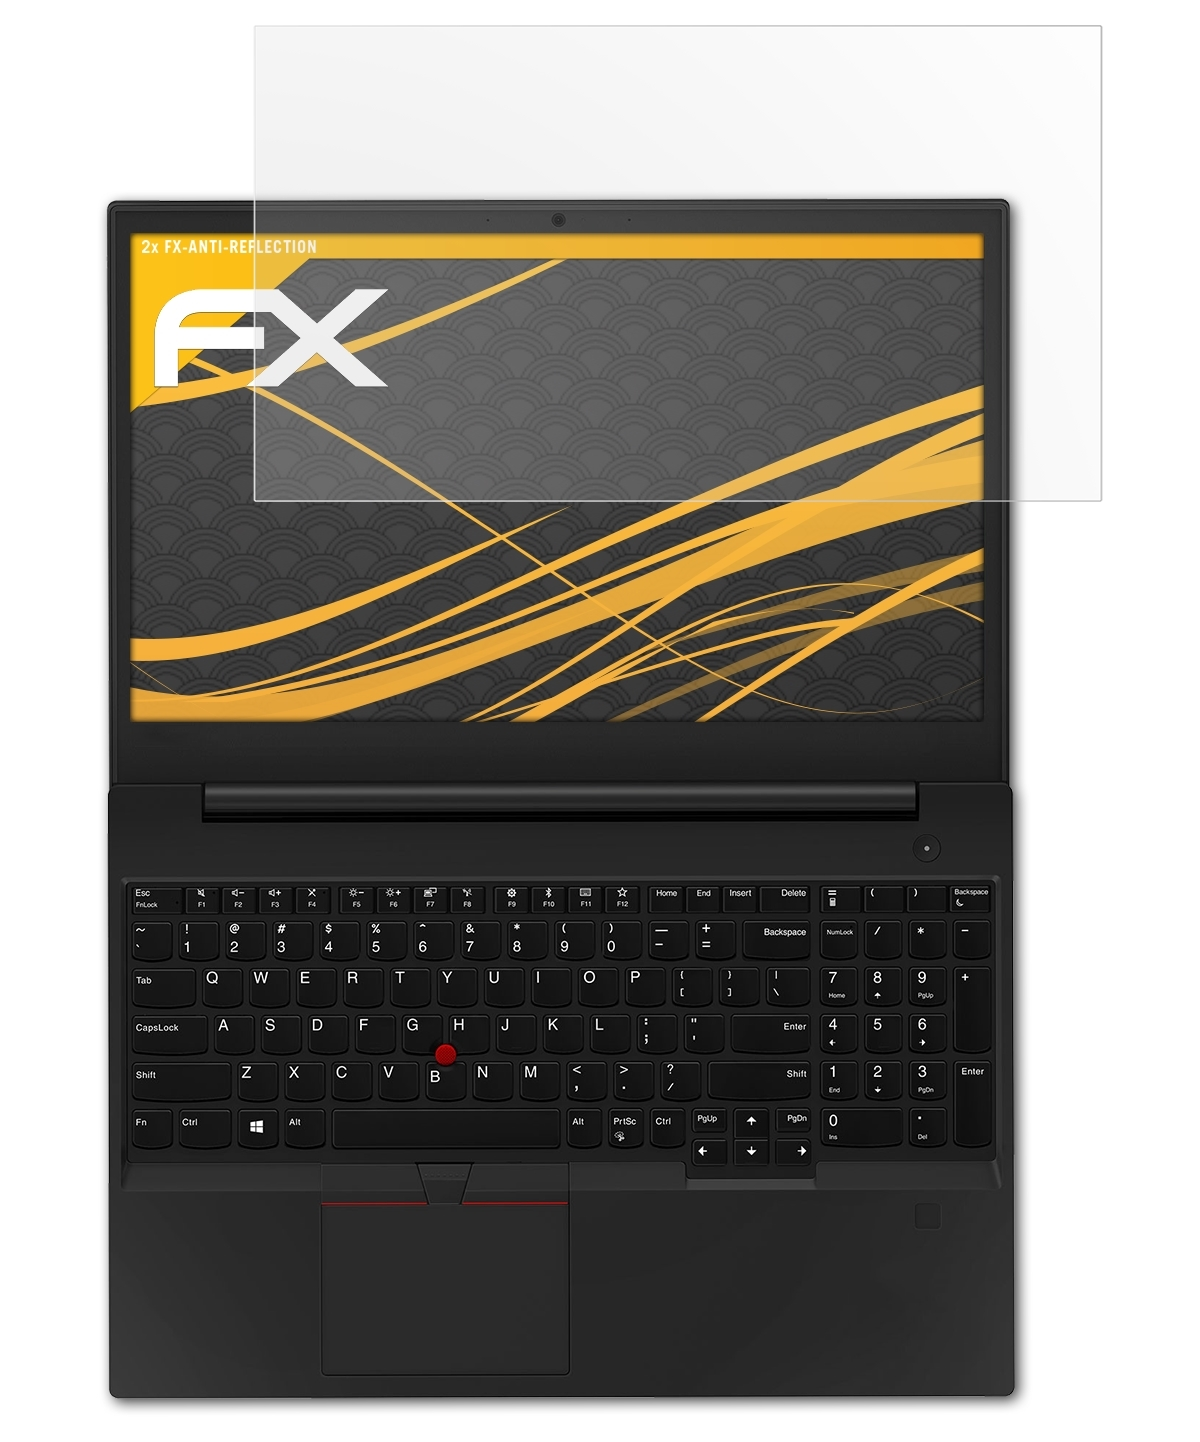 ThinkPad FX-Antireflex ATFOLIX Displayschutz(für E590) 2x Lenovo